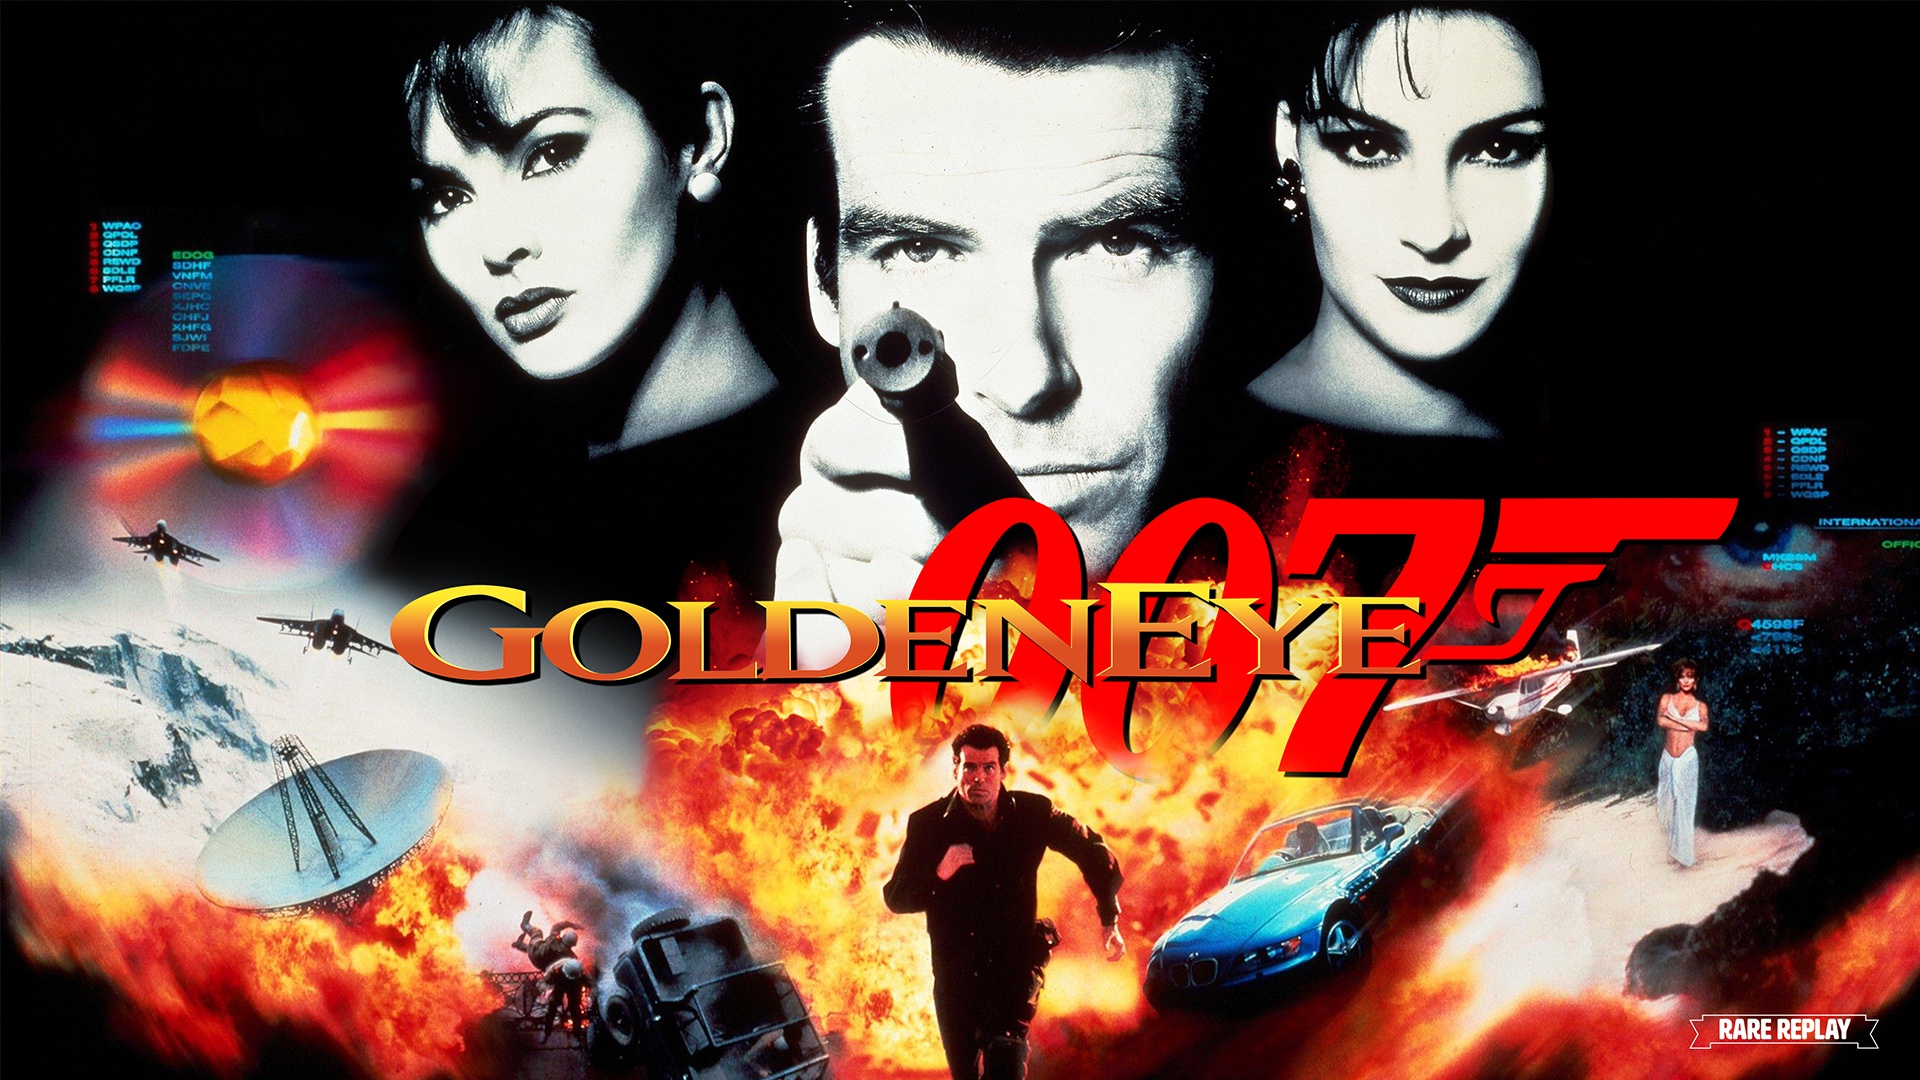 Schon bald im Game Pass: Klassiker GoldenEye 007 kehrt zurück